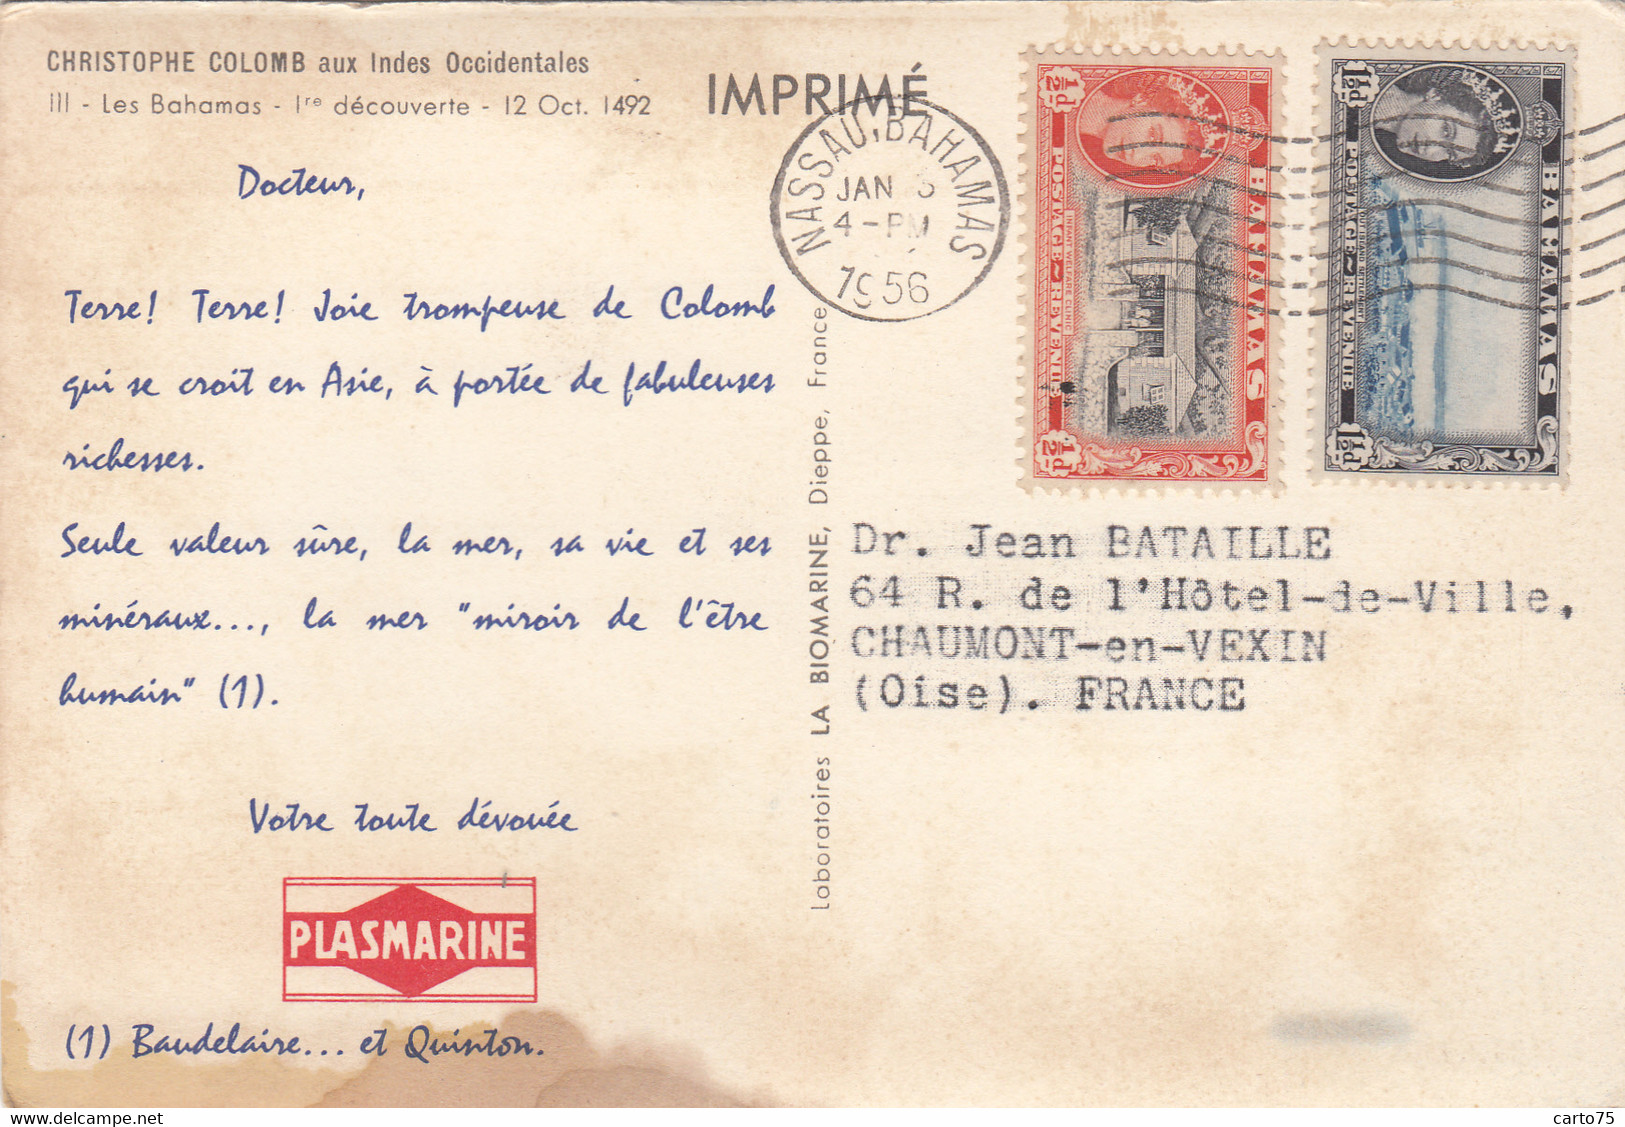 Antilles - Iles Bahamas - Christophe Colomb - Publicité Médecine Plasmarine - Indien - Postmarked 1956 - Bahama's